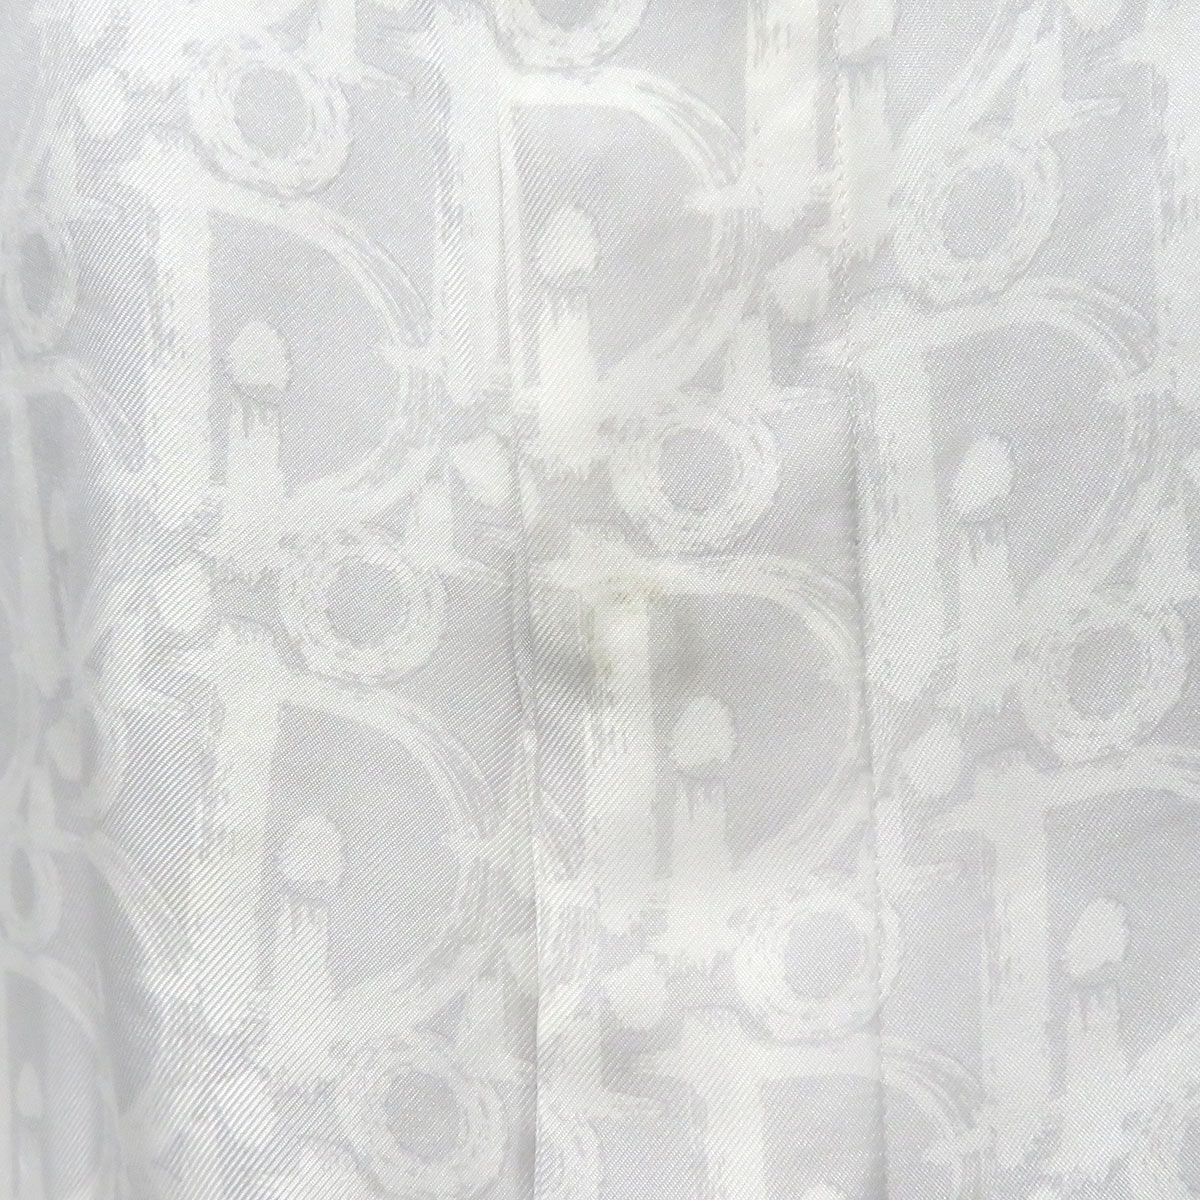 ディオール オブリーク シルク 長袖シャツ 013C502A5141 メンズ グレー系 Dior【中古】 【アパレル・小物】